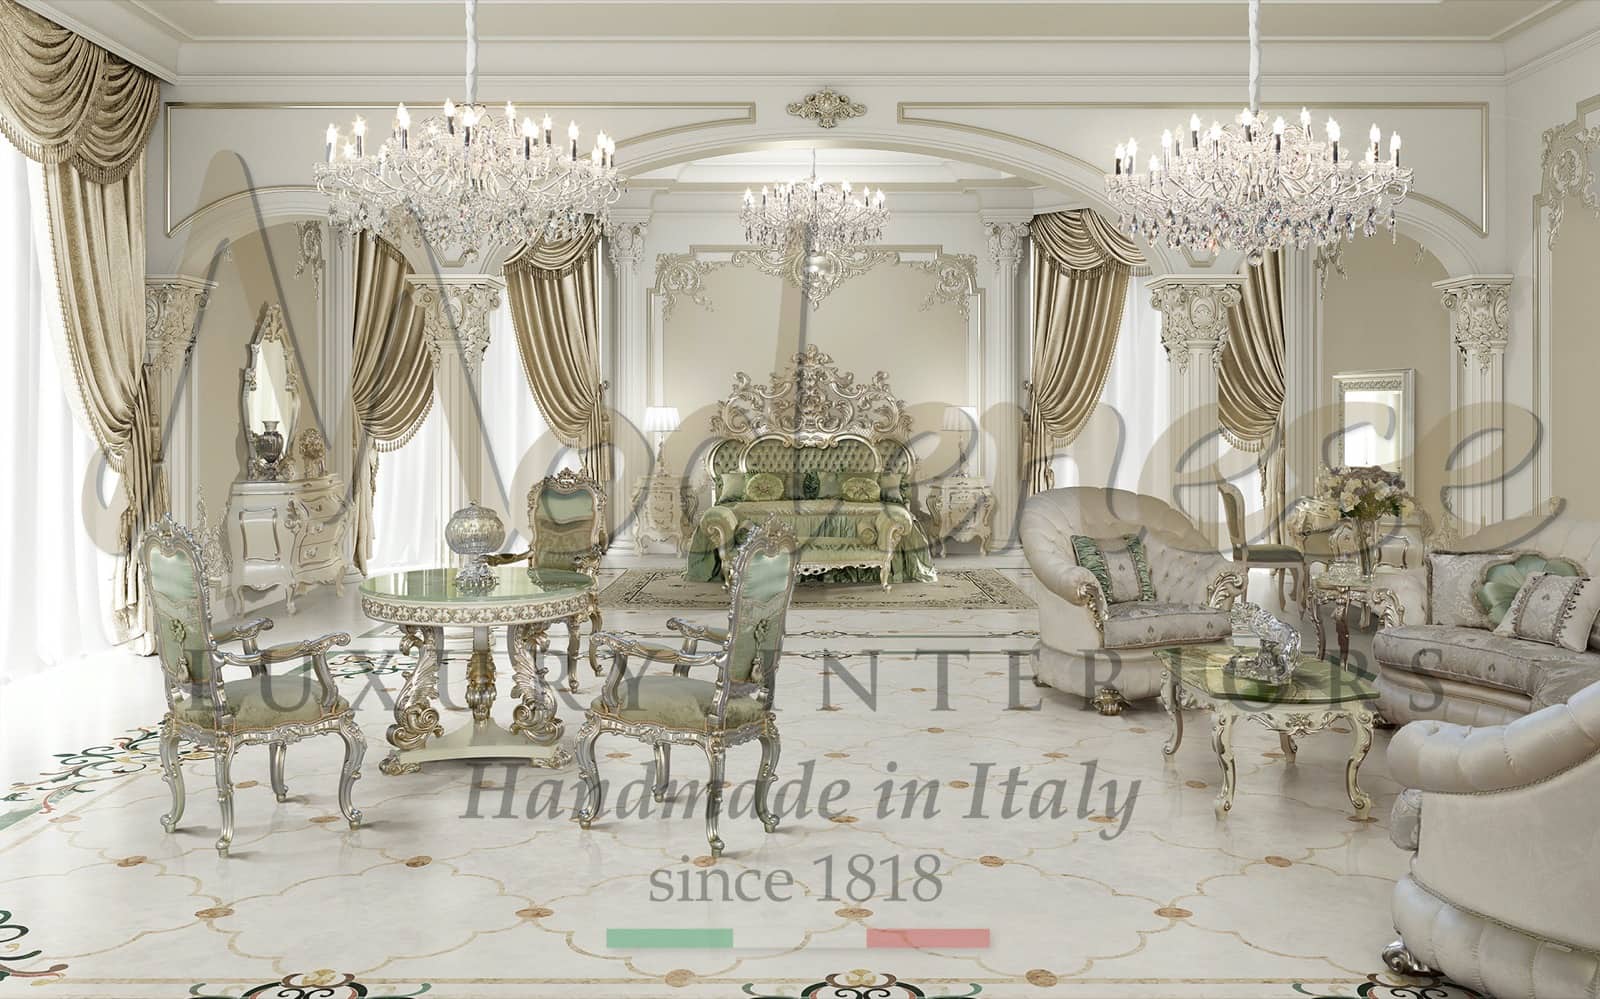 style d'intérieur pour compléter votre projet de design d'intérieur de luxe chambre principale avec des meubles classiques baroques faits à la main intemporels et de qualité made in Italy des idées personnalisées pour des intérieurs uniques dans un style classique